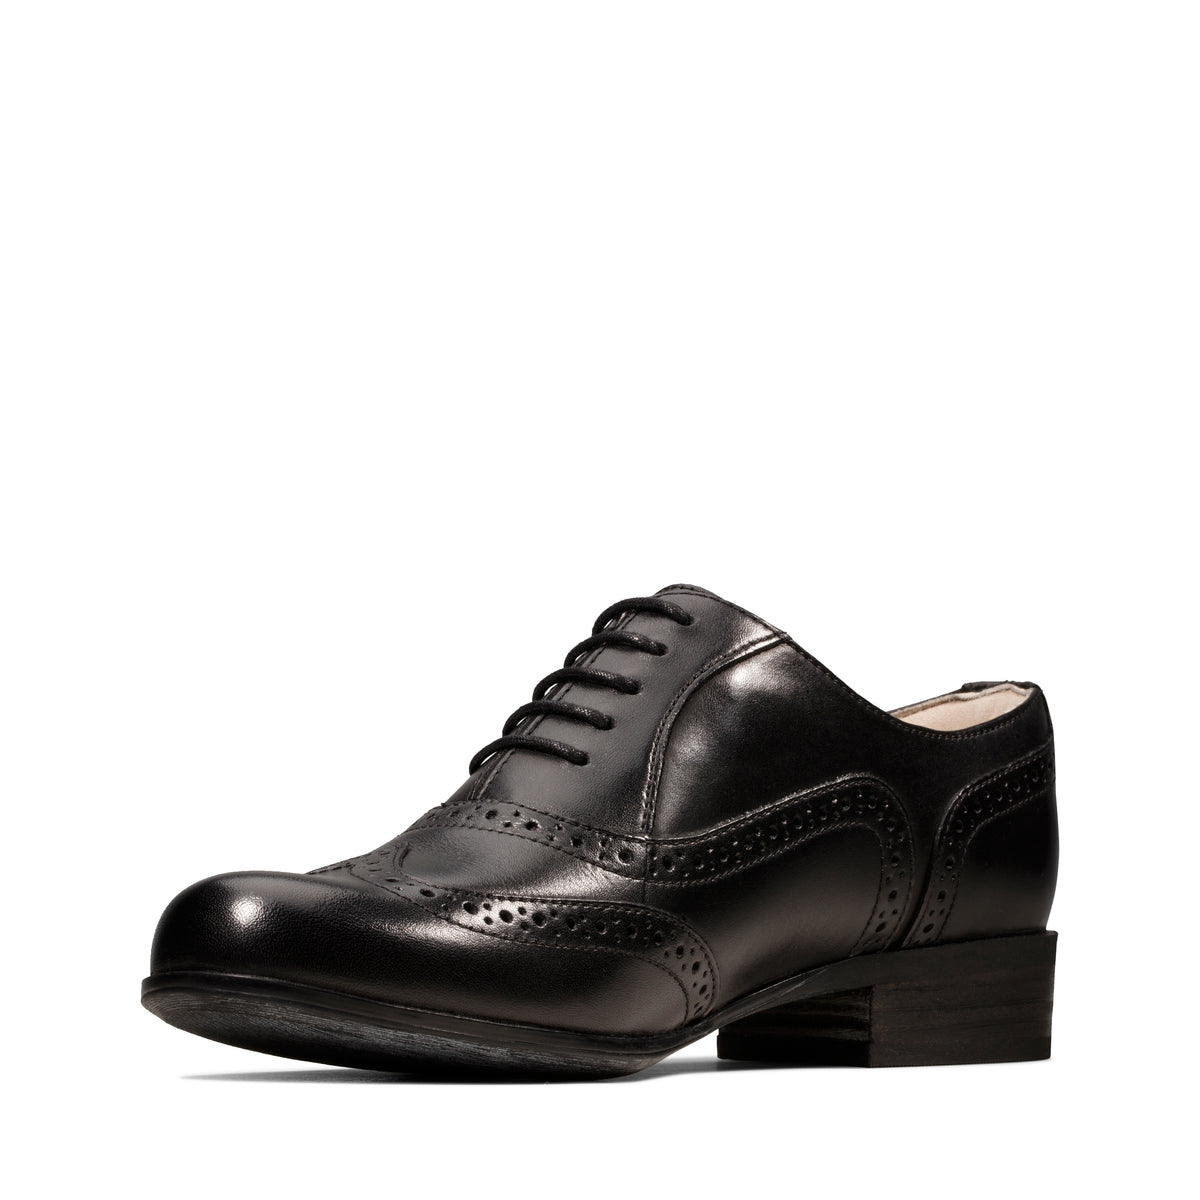 Zapatos Oxford De La Marca Clarks Para Mujer Modelo Hamble Oak Black Leather En Color Negro